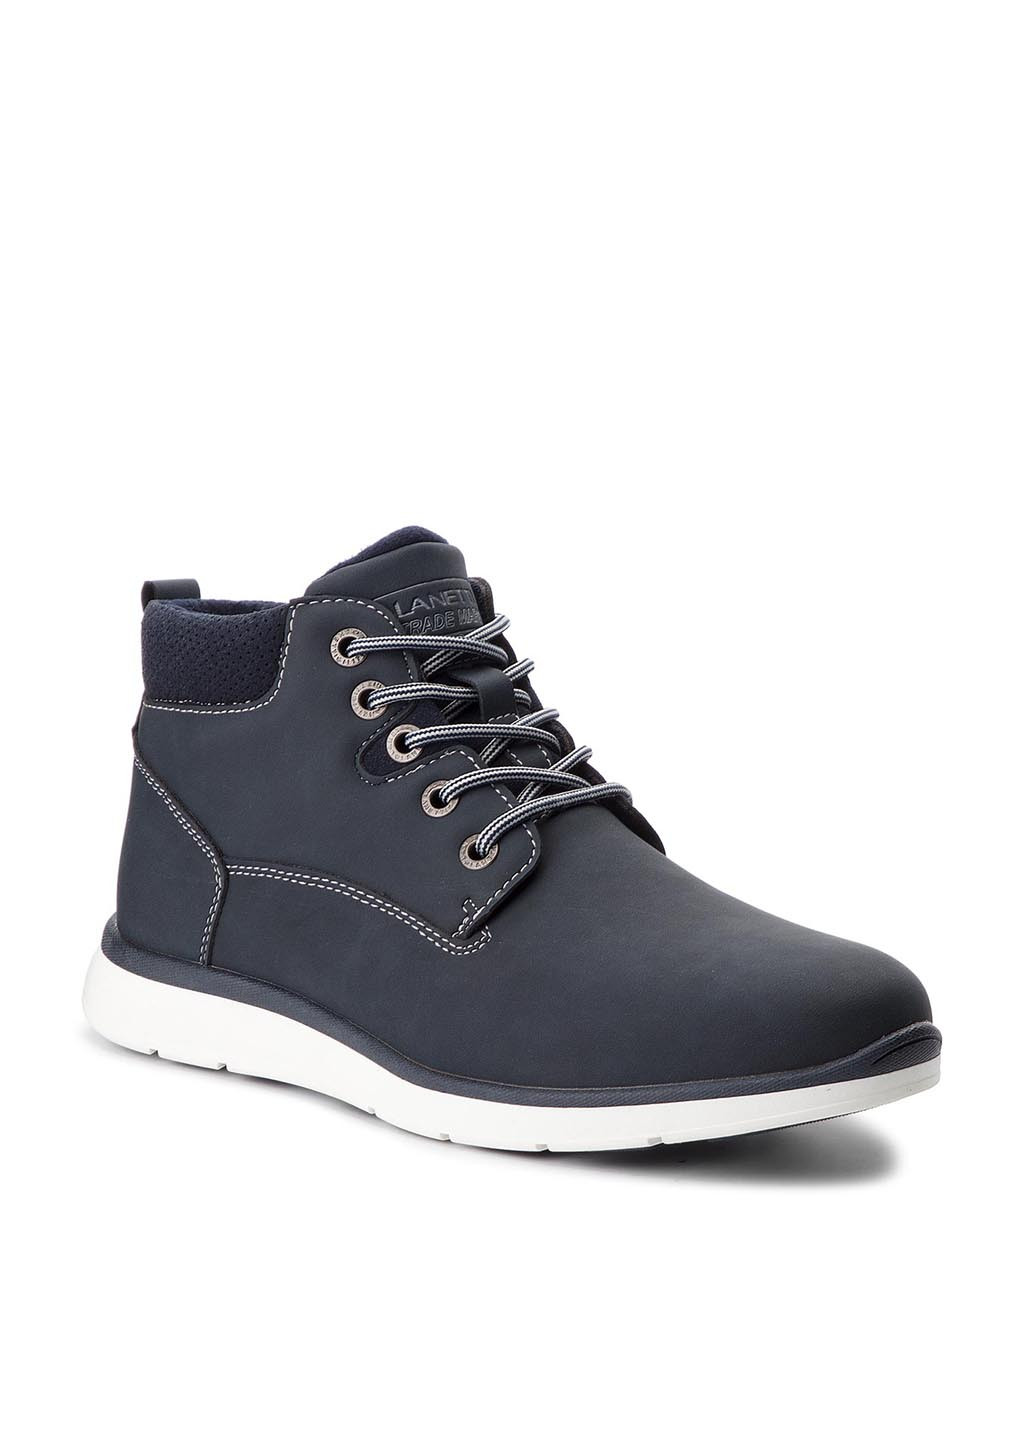 Темно-синие осенние черевики mp07-171006-01 Lanetti